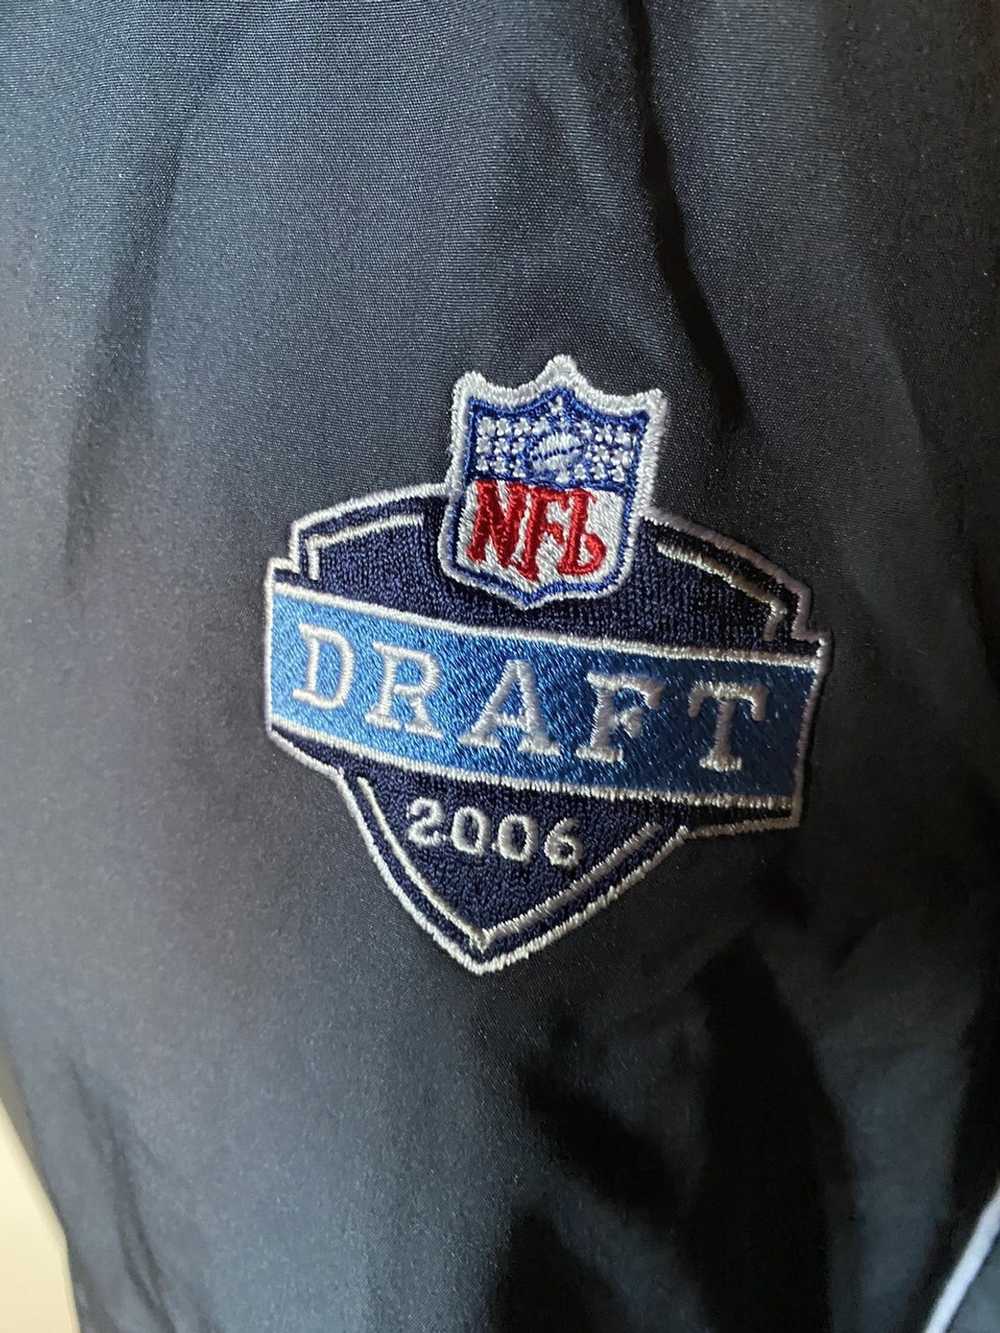 NFL 2006 NFL DRAFT JACKET (VINTAGE) - image 2